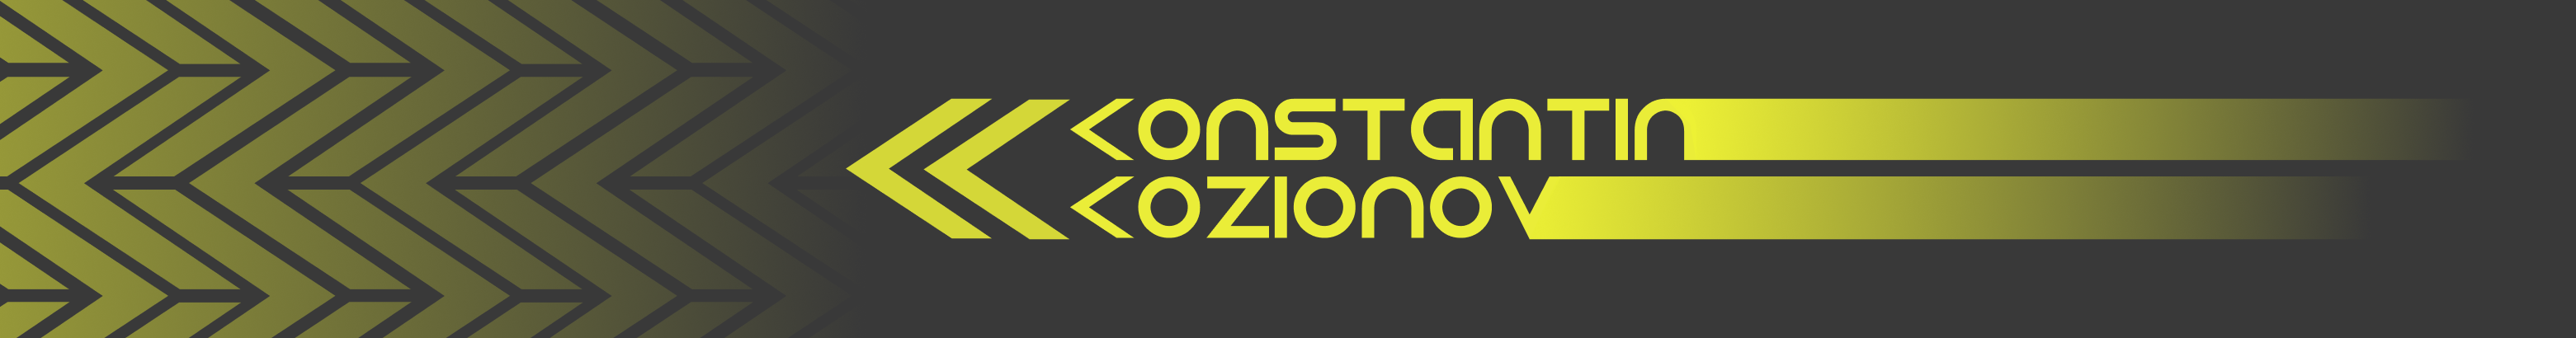 Konstantin Kozionov's profile banner